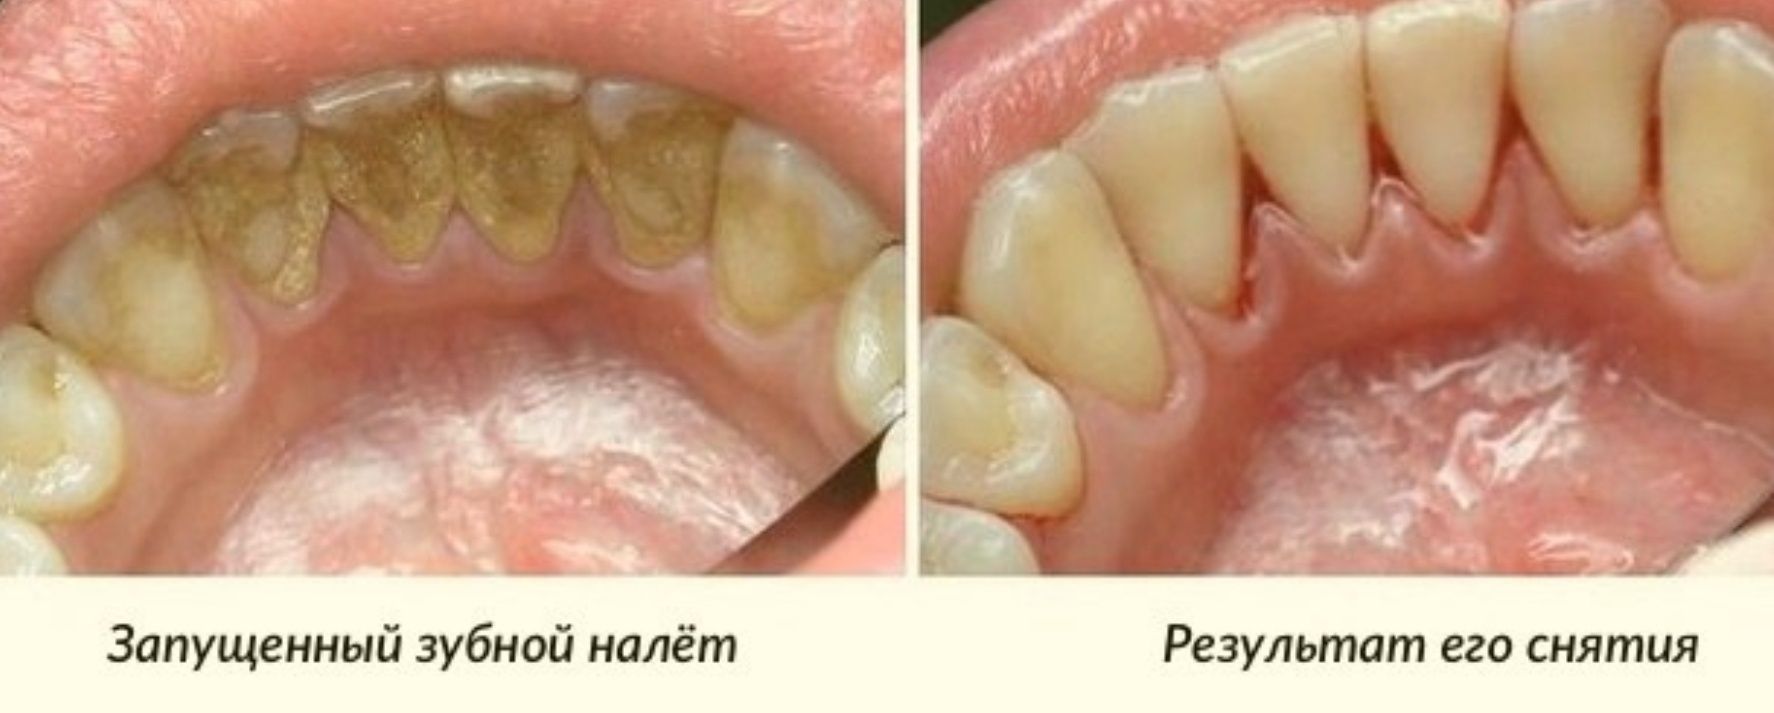 Стоматолог. Лечение и протезирование зубов